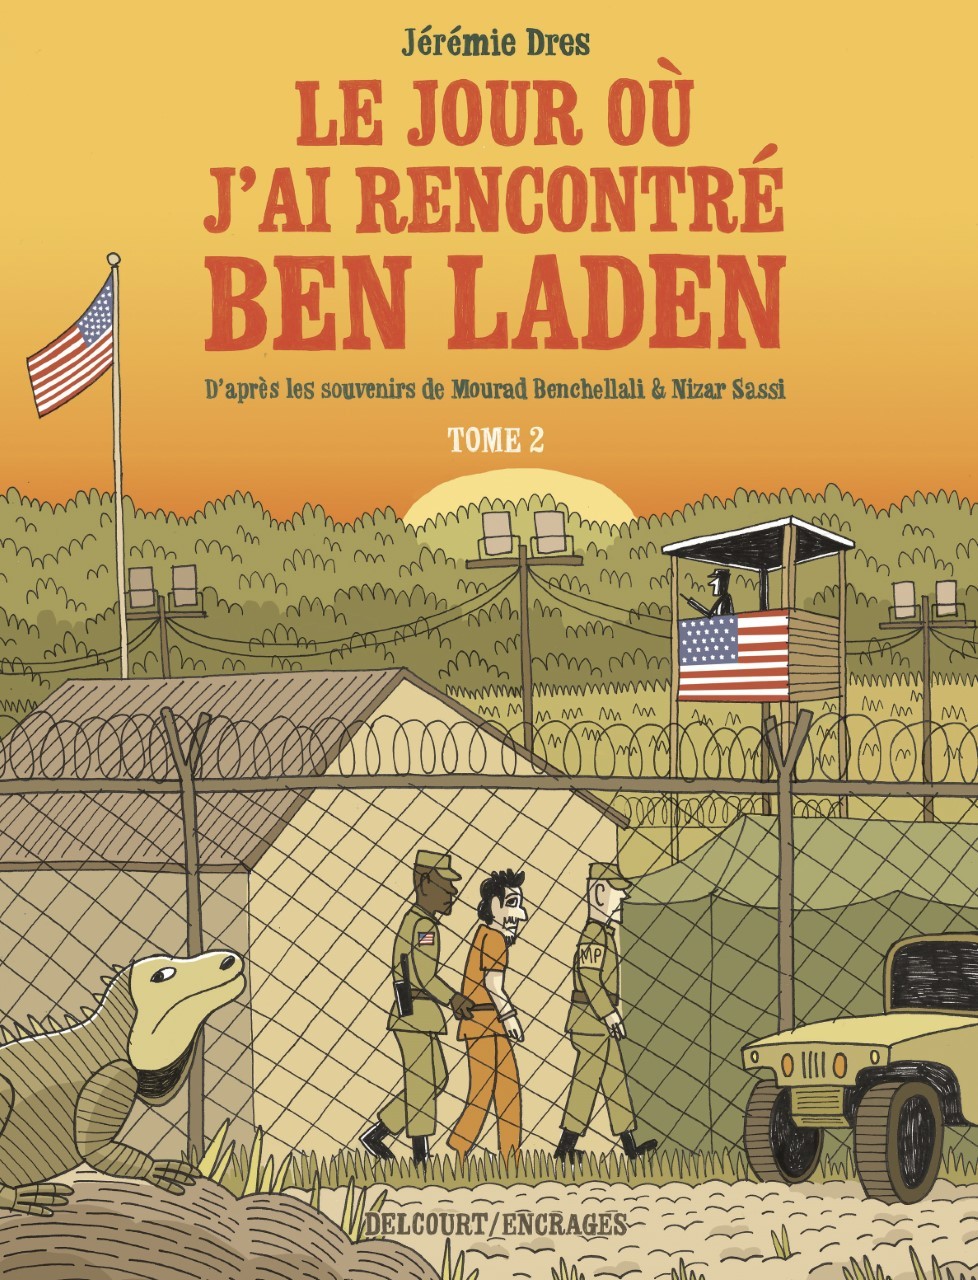 Dos ex presos de Guantánamo transforman su historia en un cómic contra la radicalización